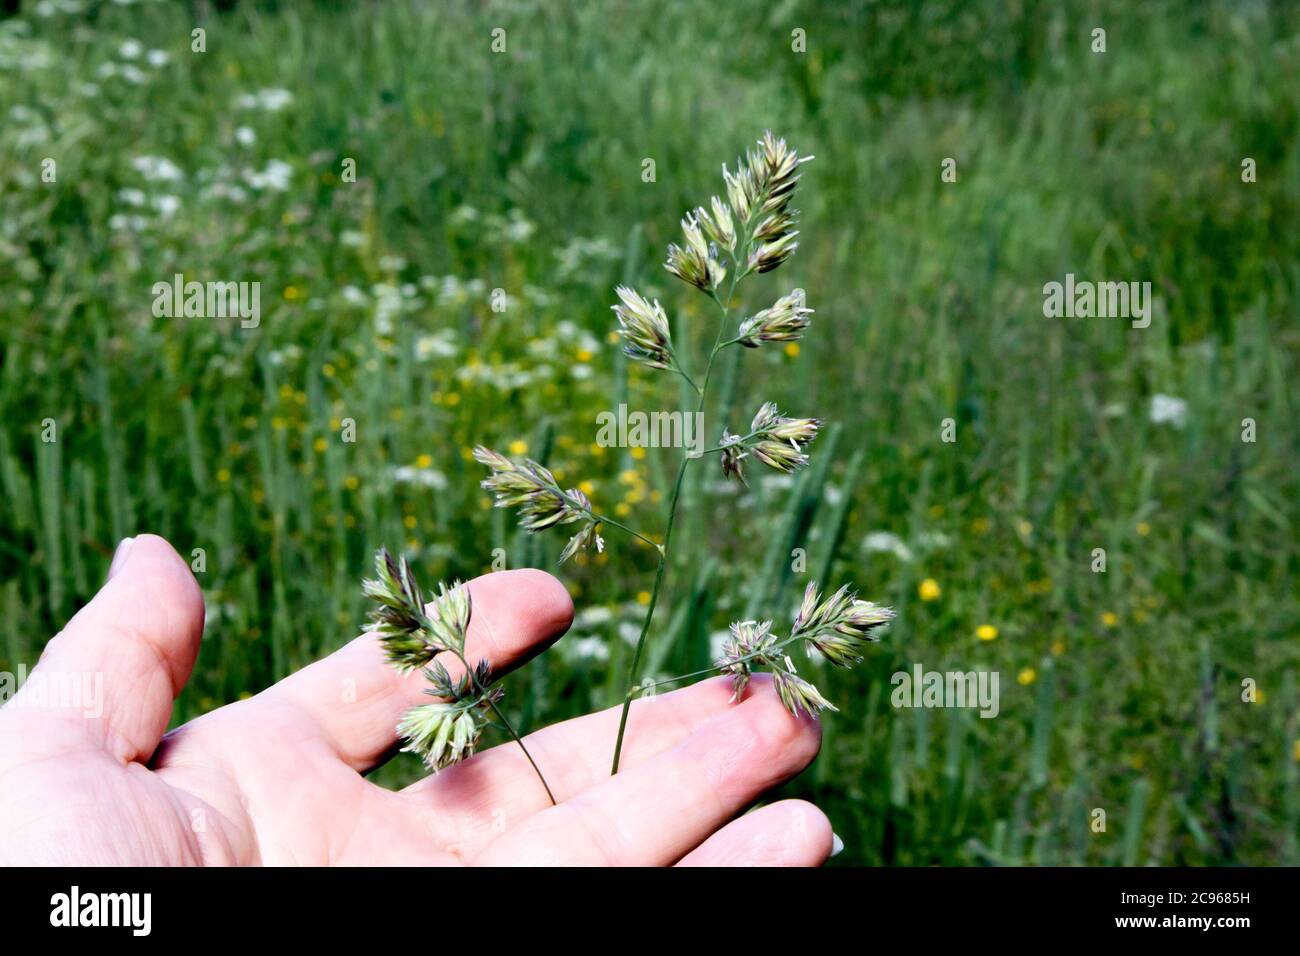 Flauschige Spitzen der mehrjährigen Wiese Gras phleum Vorwand und menschliche Hand hält es Stockfoto